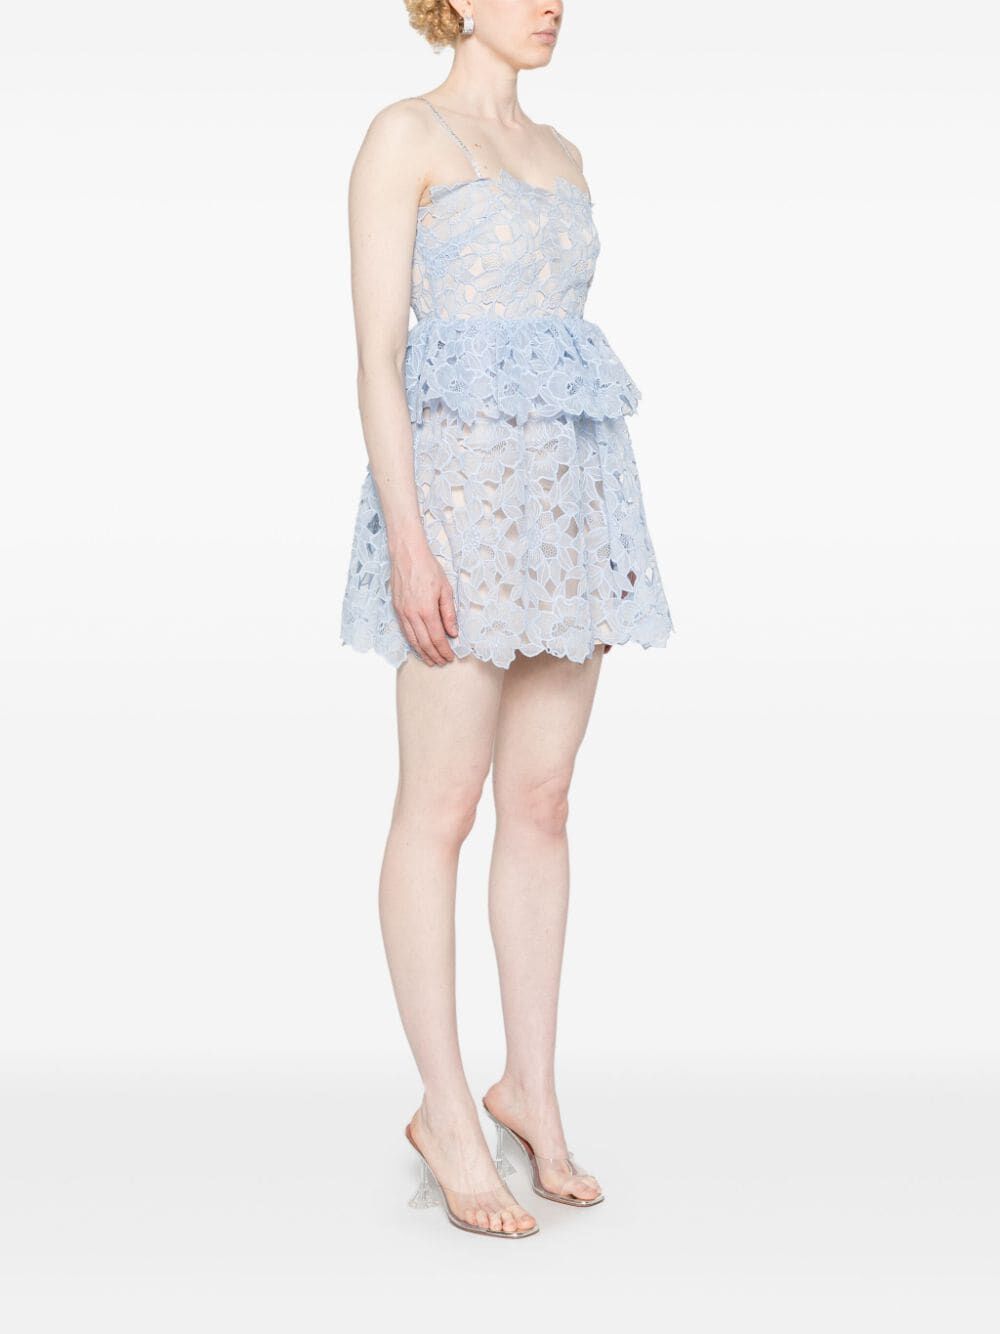 Blue Organza Lace Mini Dress